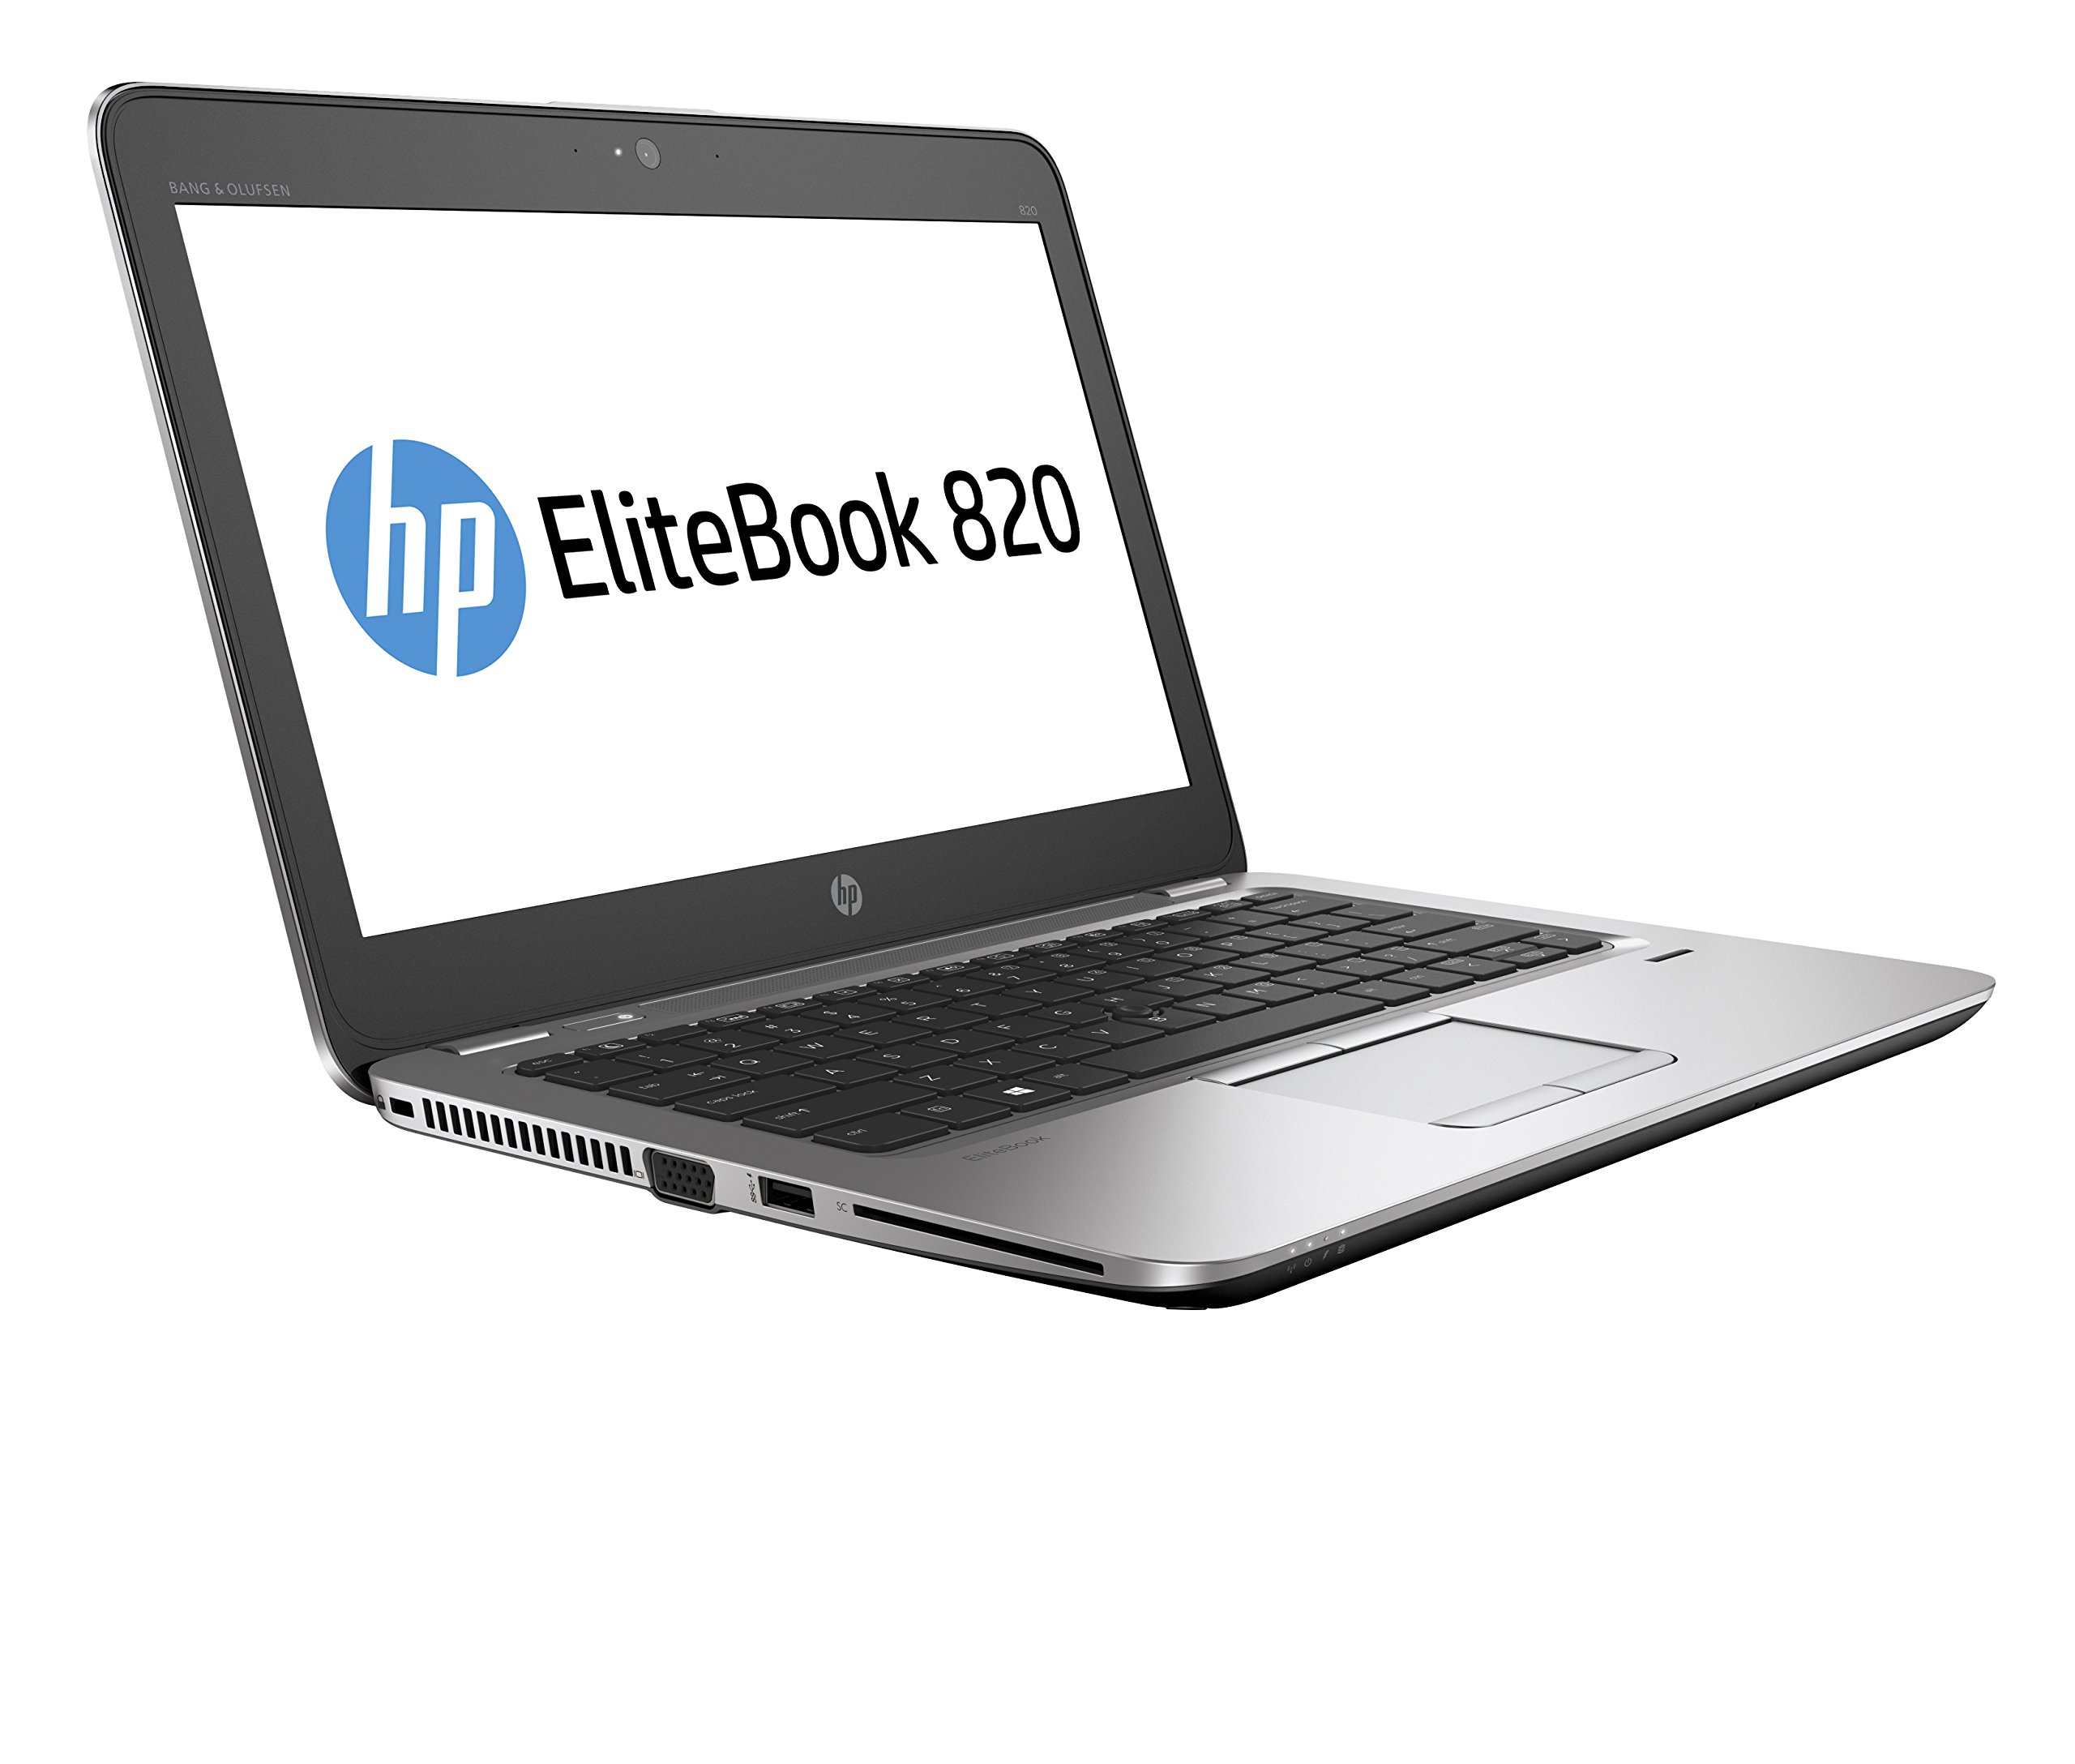 HP EliteBook 820 G3 Notebook - HP EliteBook 820 G3 Notebook Uyumlu Ürünler  / Bilendenal.com Doğru ürünü bilendenal